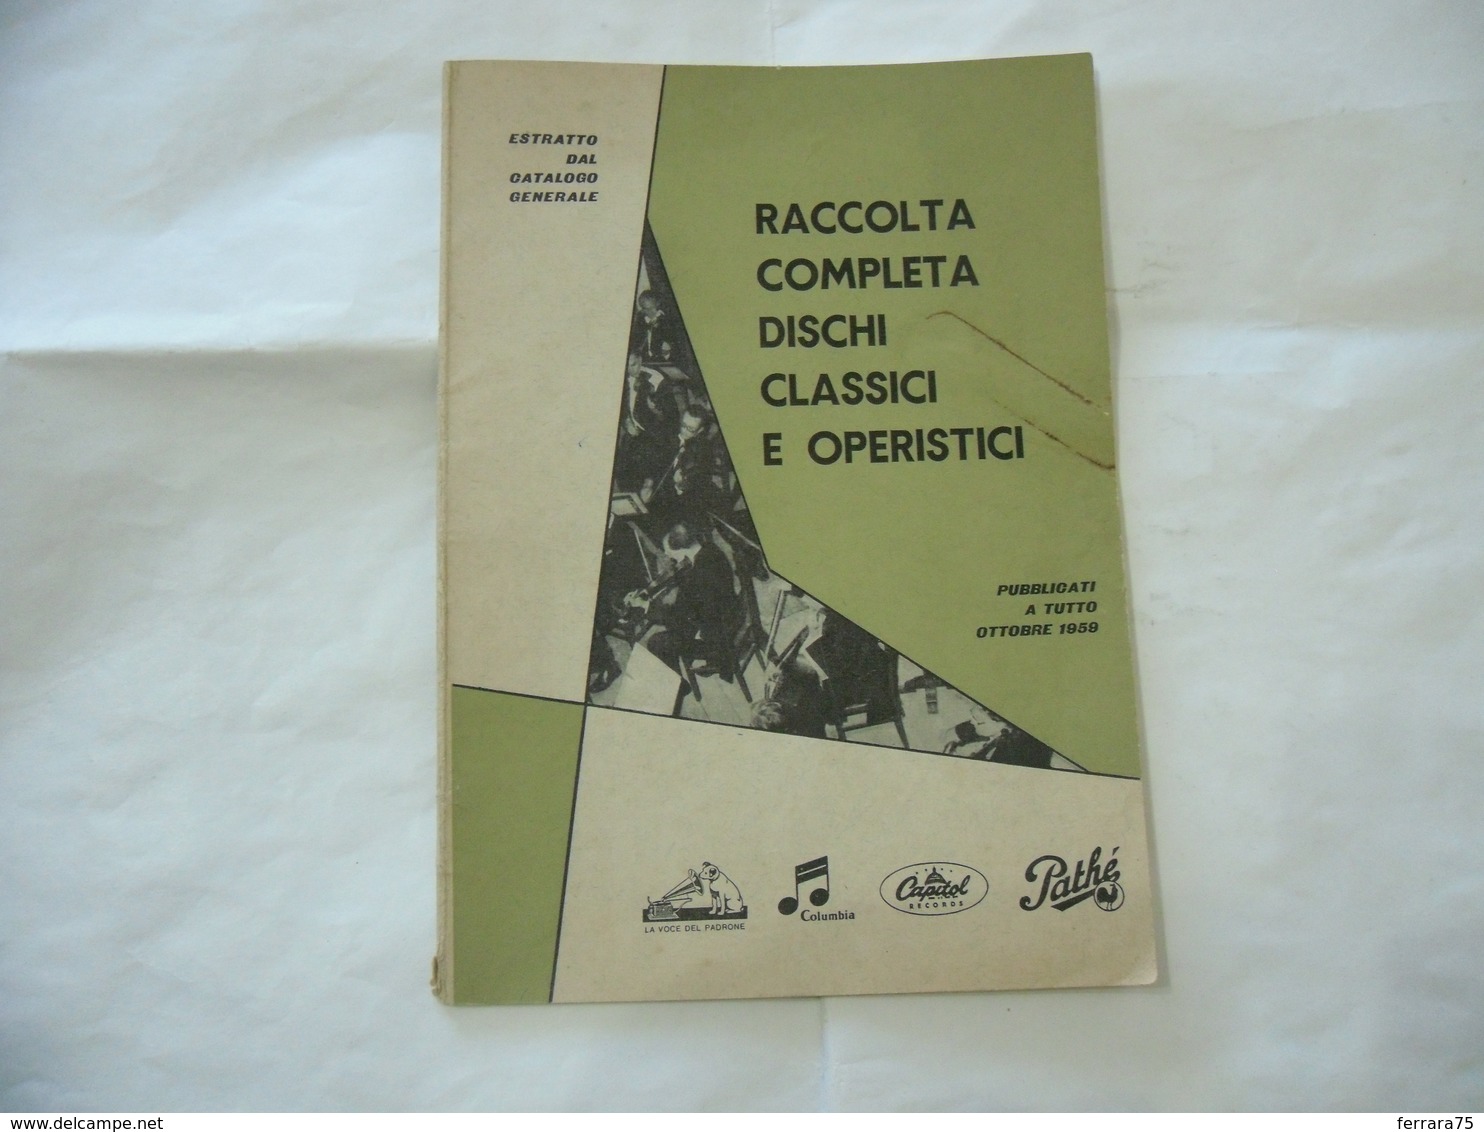 CATALOGO RACCOLTA COMPLETA DISCHI CLASSICI E OPERISTICI OTTOBRE 1959. - Cinema & Music